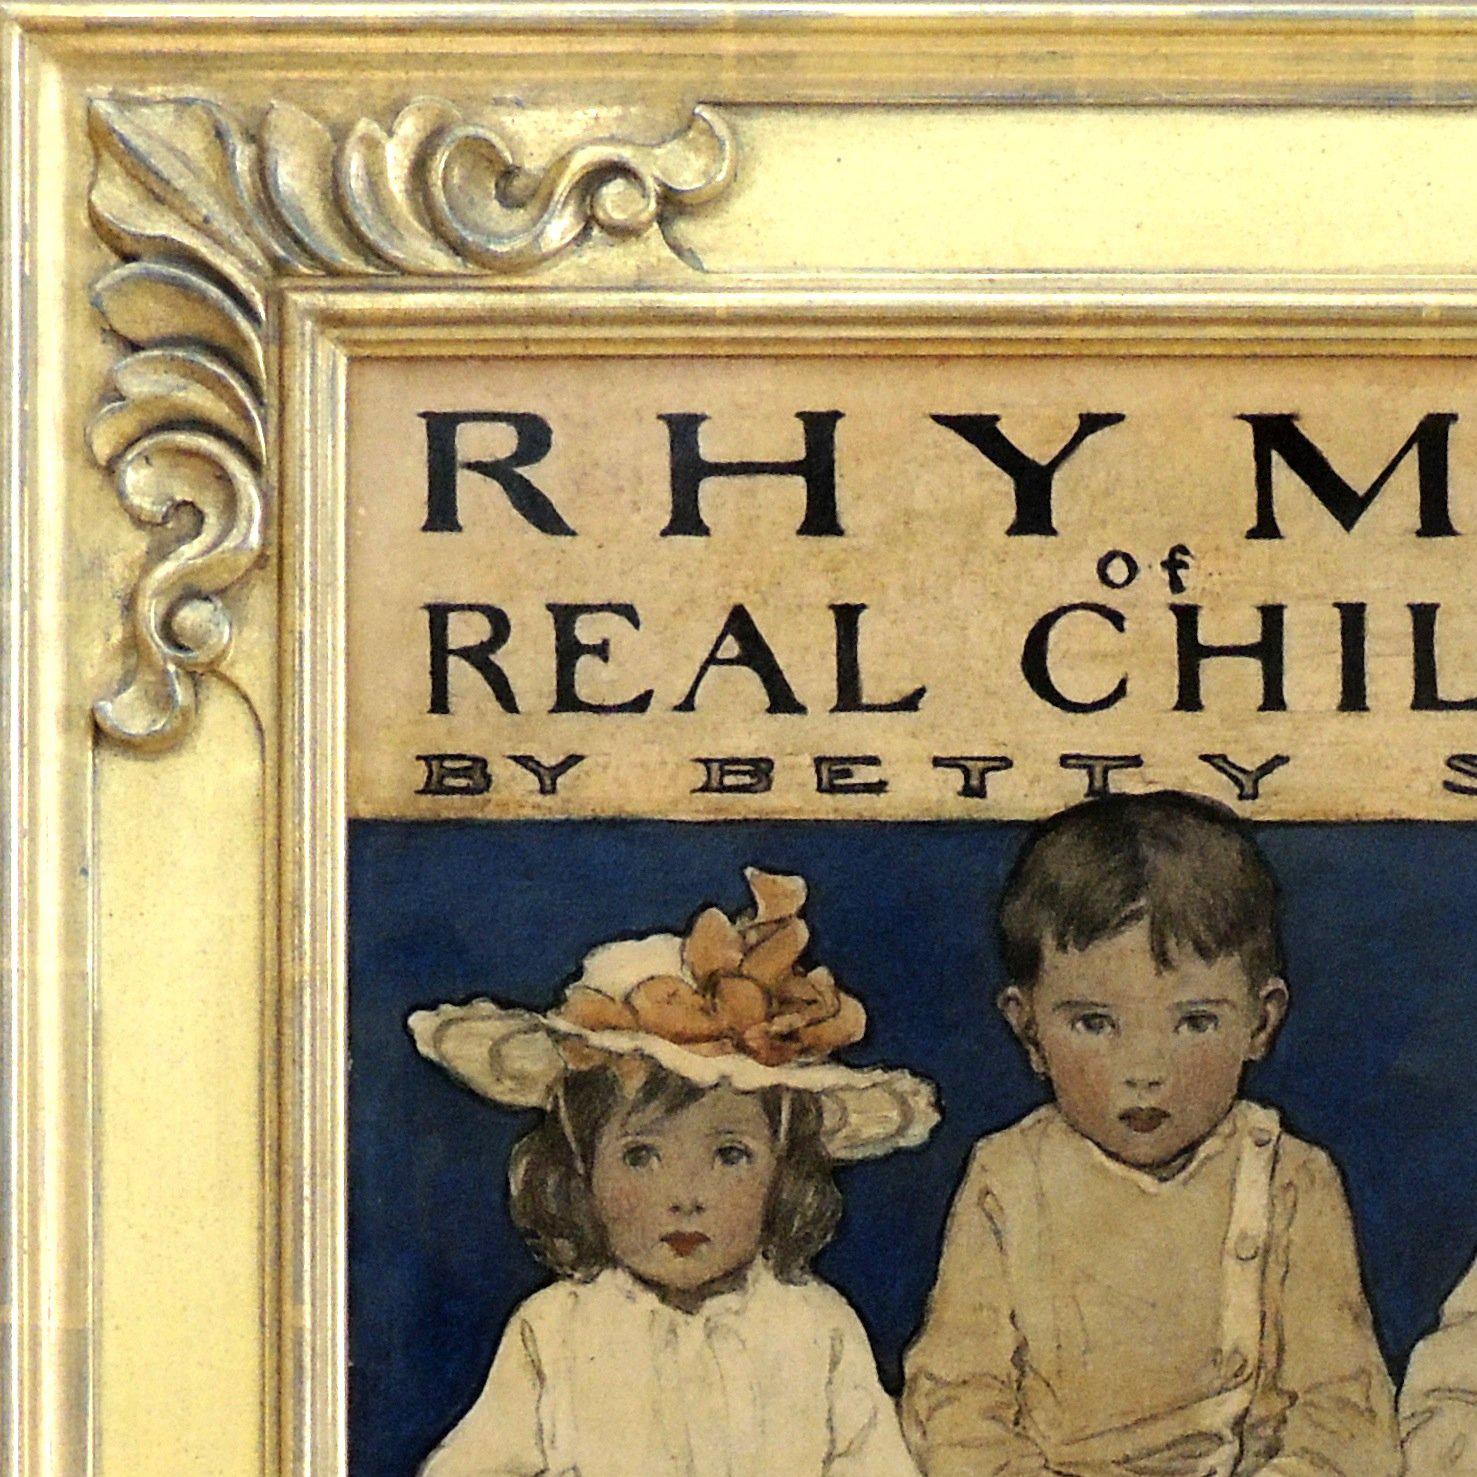 Rhymes von echten Kindern (Braun), Figurative Art, von Jessie Willcox Smith